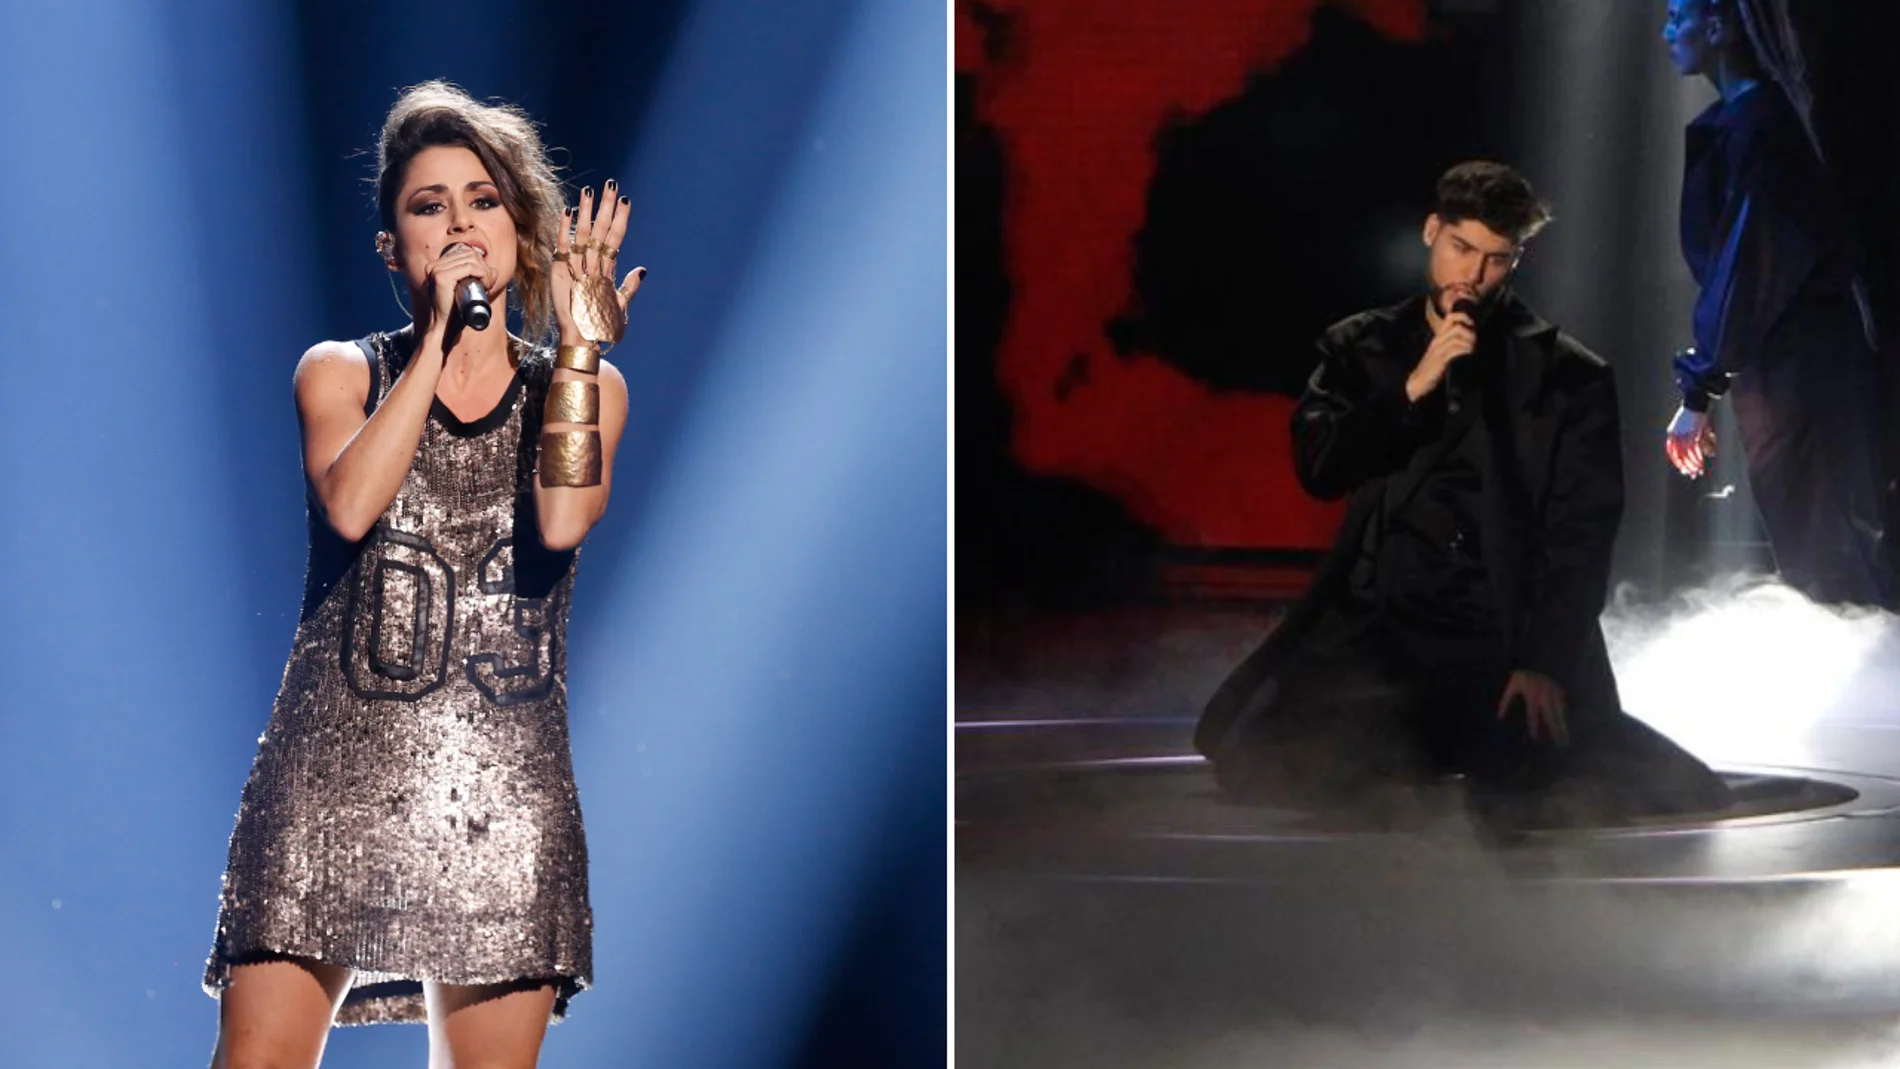 Barei y José Otero se lanzan los cuchillos al hablar de Eurovisión: "Te puedo componer yo la canción, a lo mejor te va mejor"